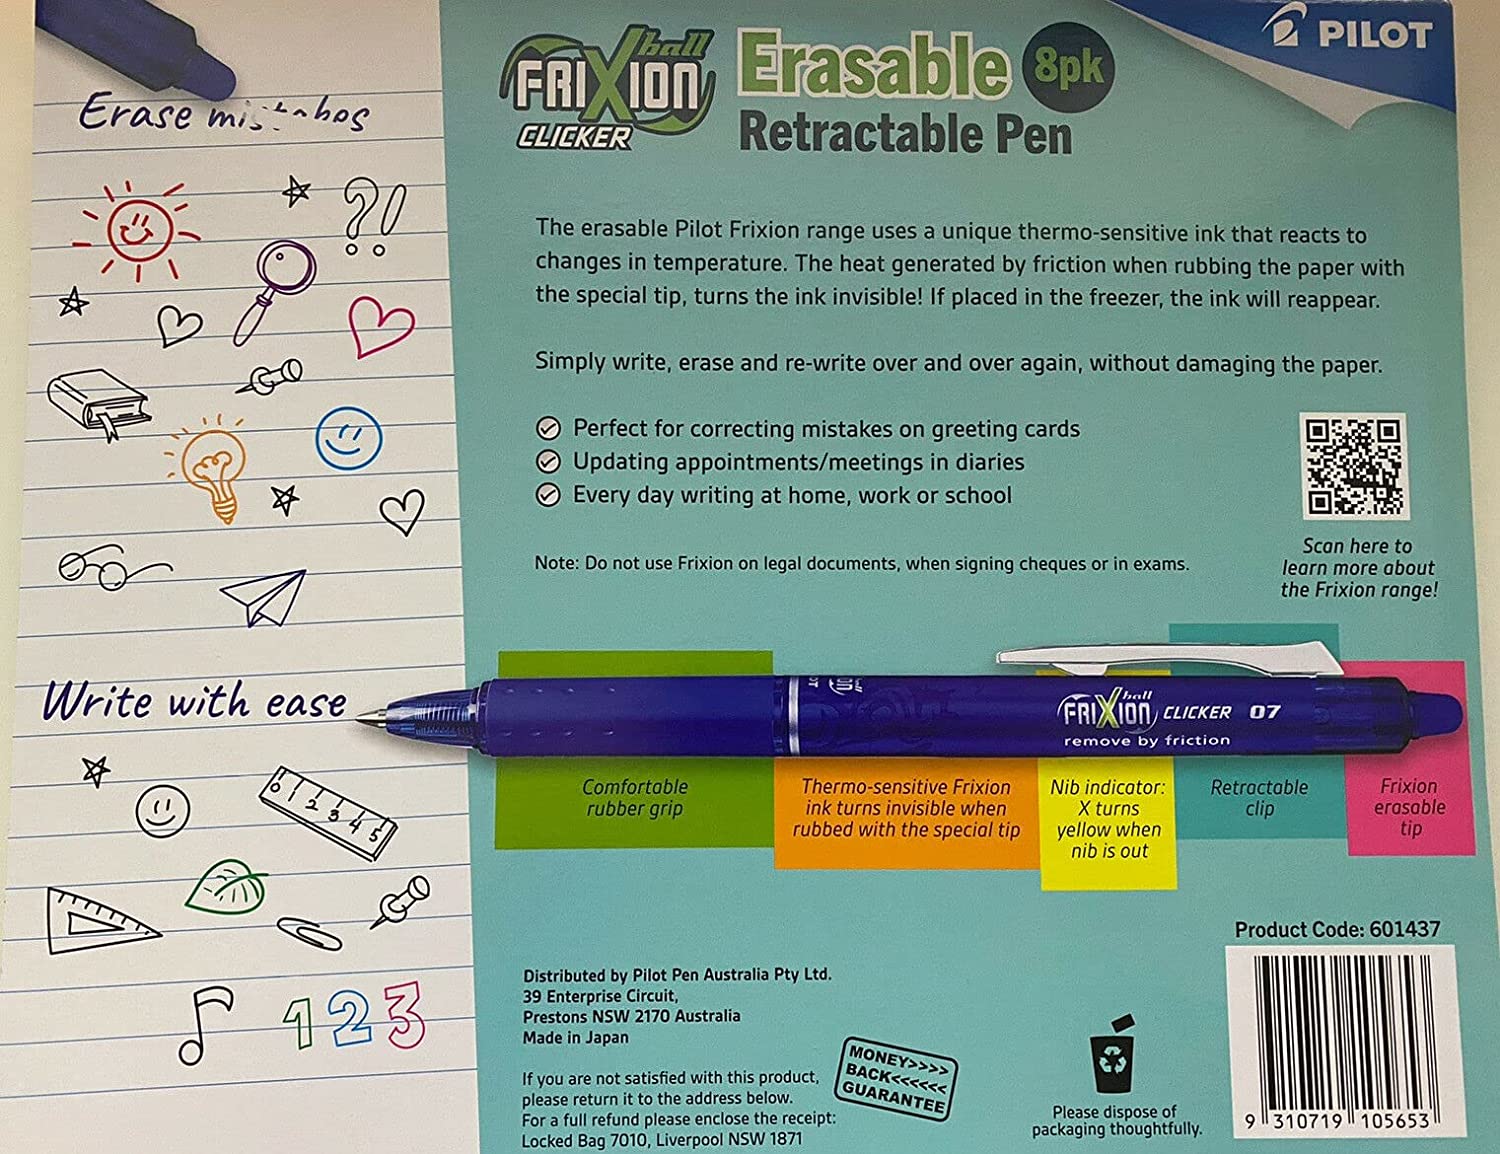 8 Pack Pilot FriXion Ball Clicker 0.7 Retractable Erasable Pen